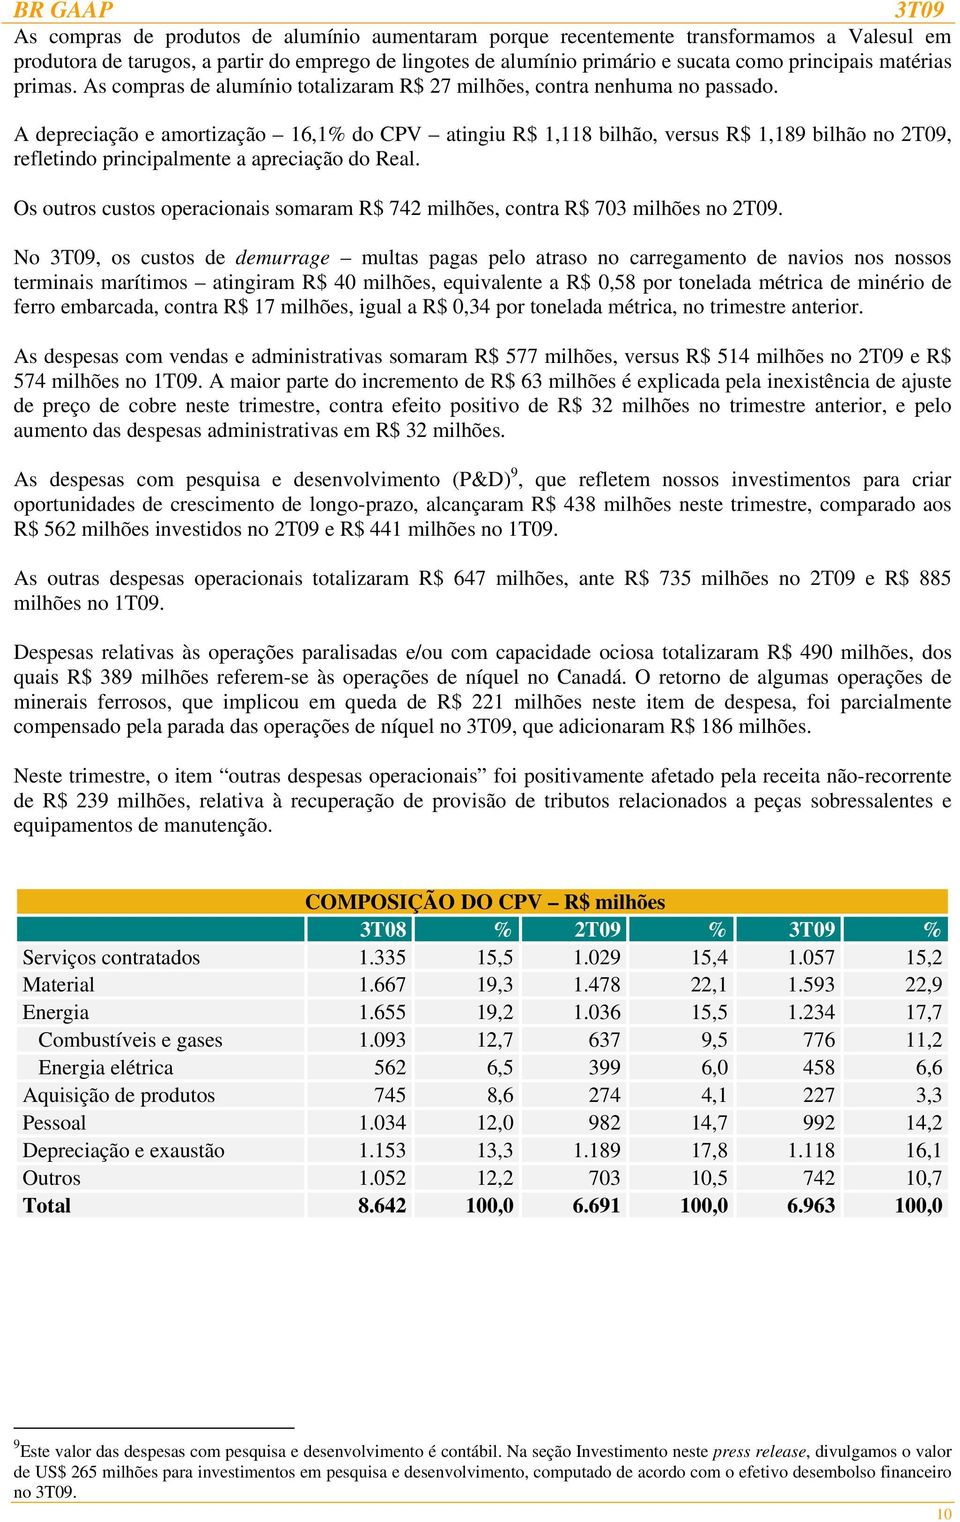 A depreciação e amortização 16,1% do CPV atingiu R$ 1,118 bilhão, versus R$ 1,189 bilhão no 2T09, refletindo principalmente a apreciação do Real.